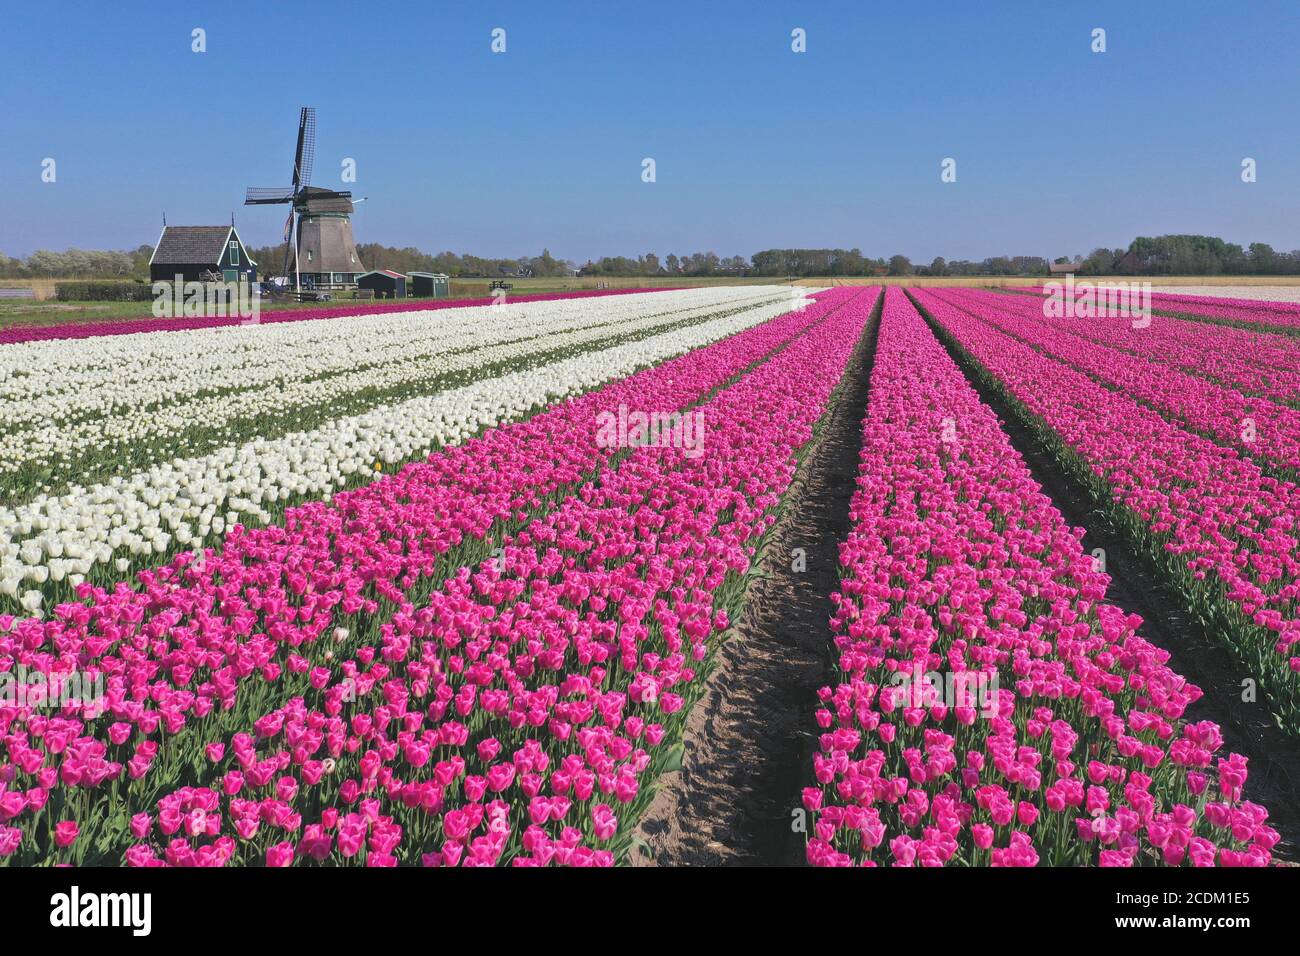 Champs de tulipes fleuris avec moulin à vent, pays-Bas, Nord des pays-Bas, t Zand Banque D'Images